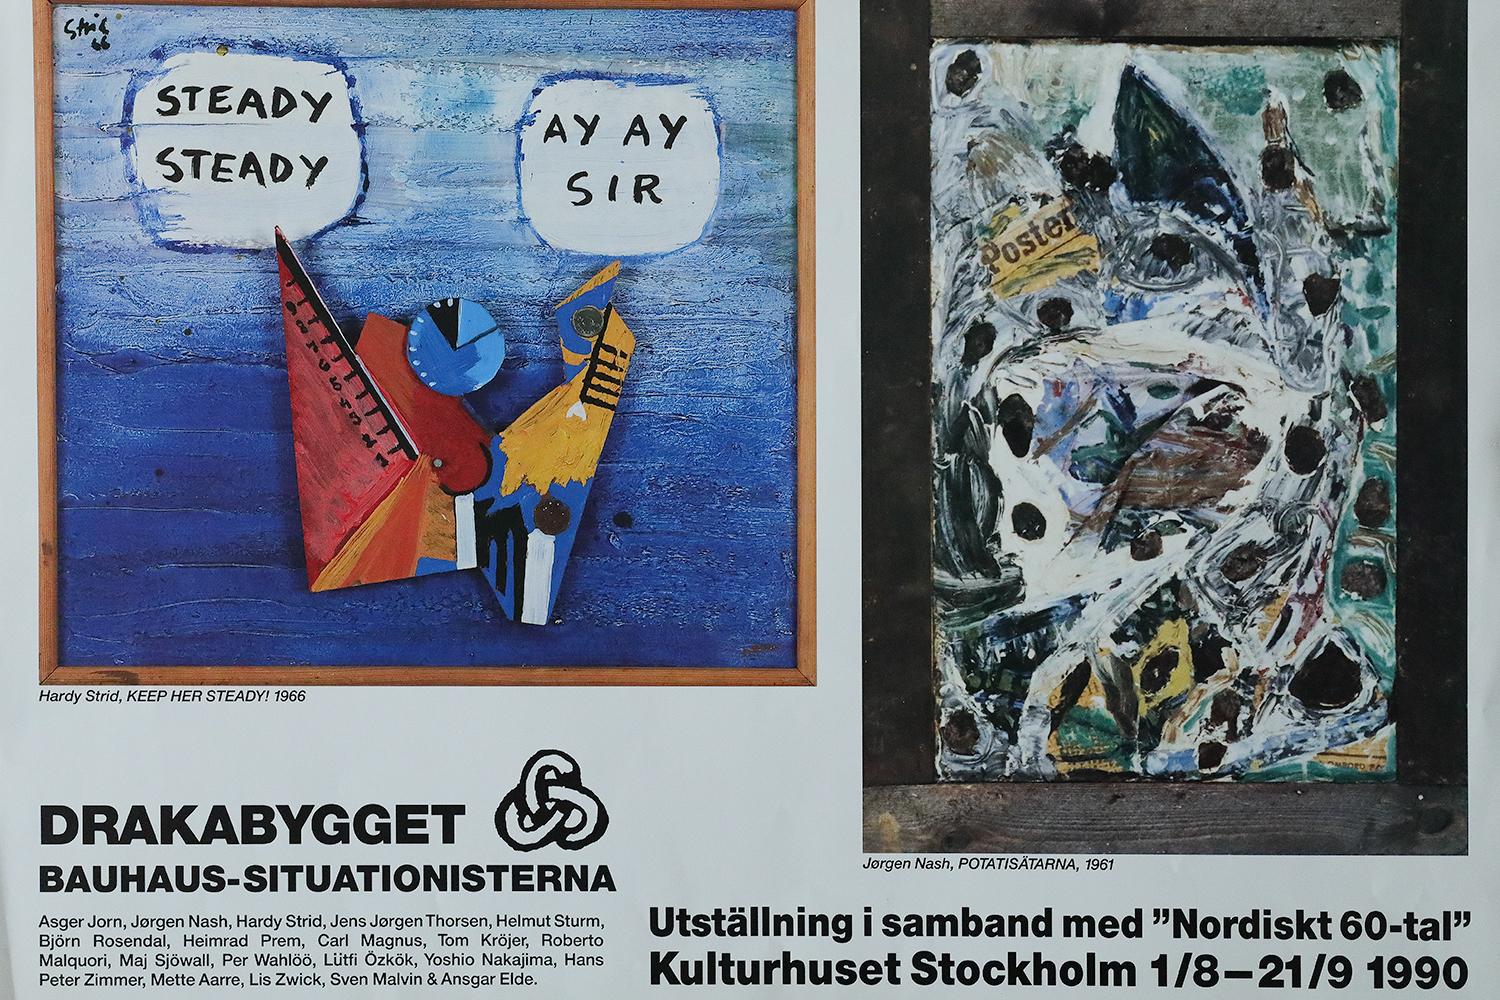 Plakat der Ausstellung Nordiskt 60-tal, die vom 1.08. bis 21.09.1990 im Kulturhuset in Stockholm stattfand. Sie präsentierte die Arbeiten von Künstlern der situationistischen Bewegung. Das Plakat verwendet Werke der skandinavischen Künstler Hardy